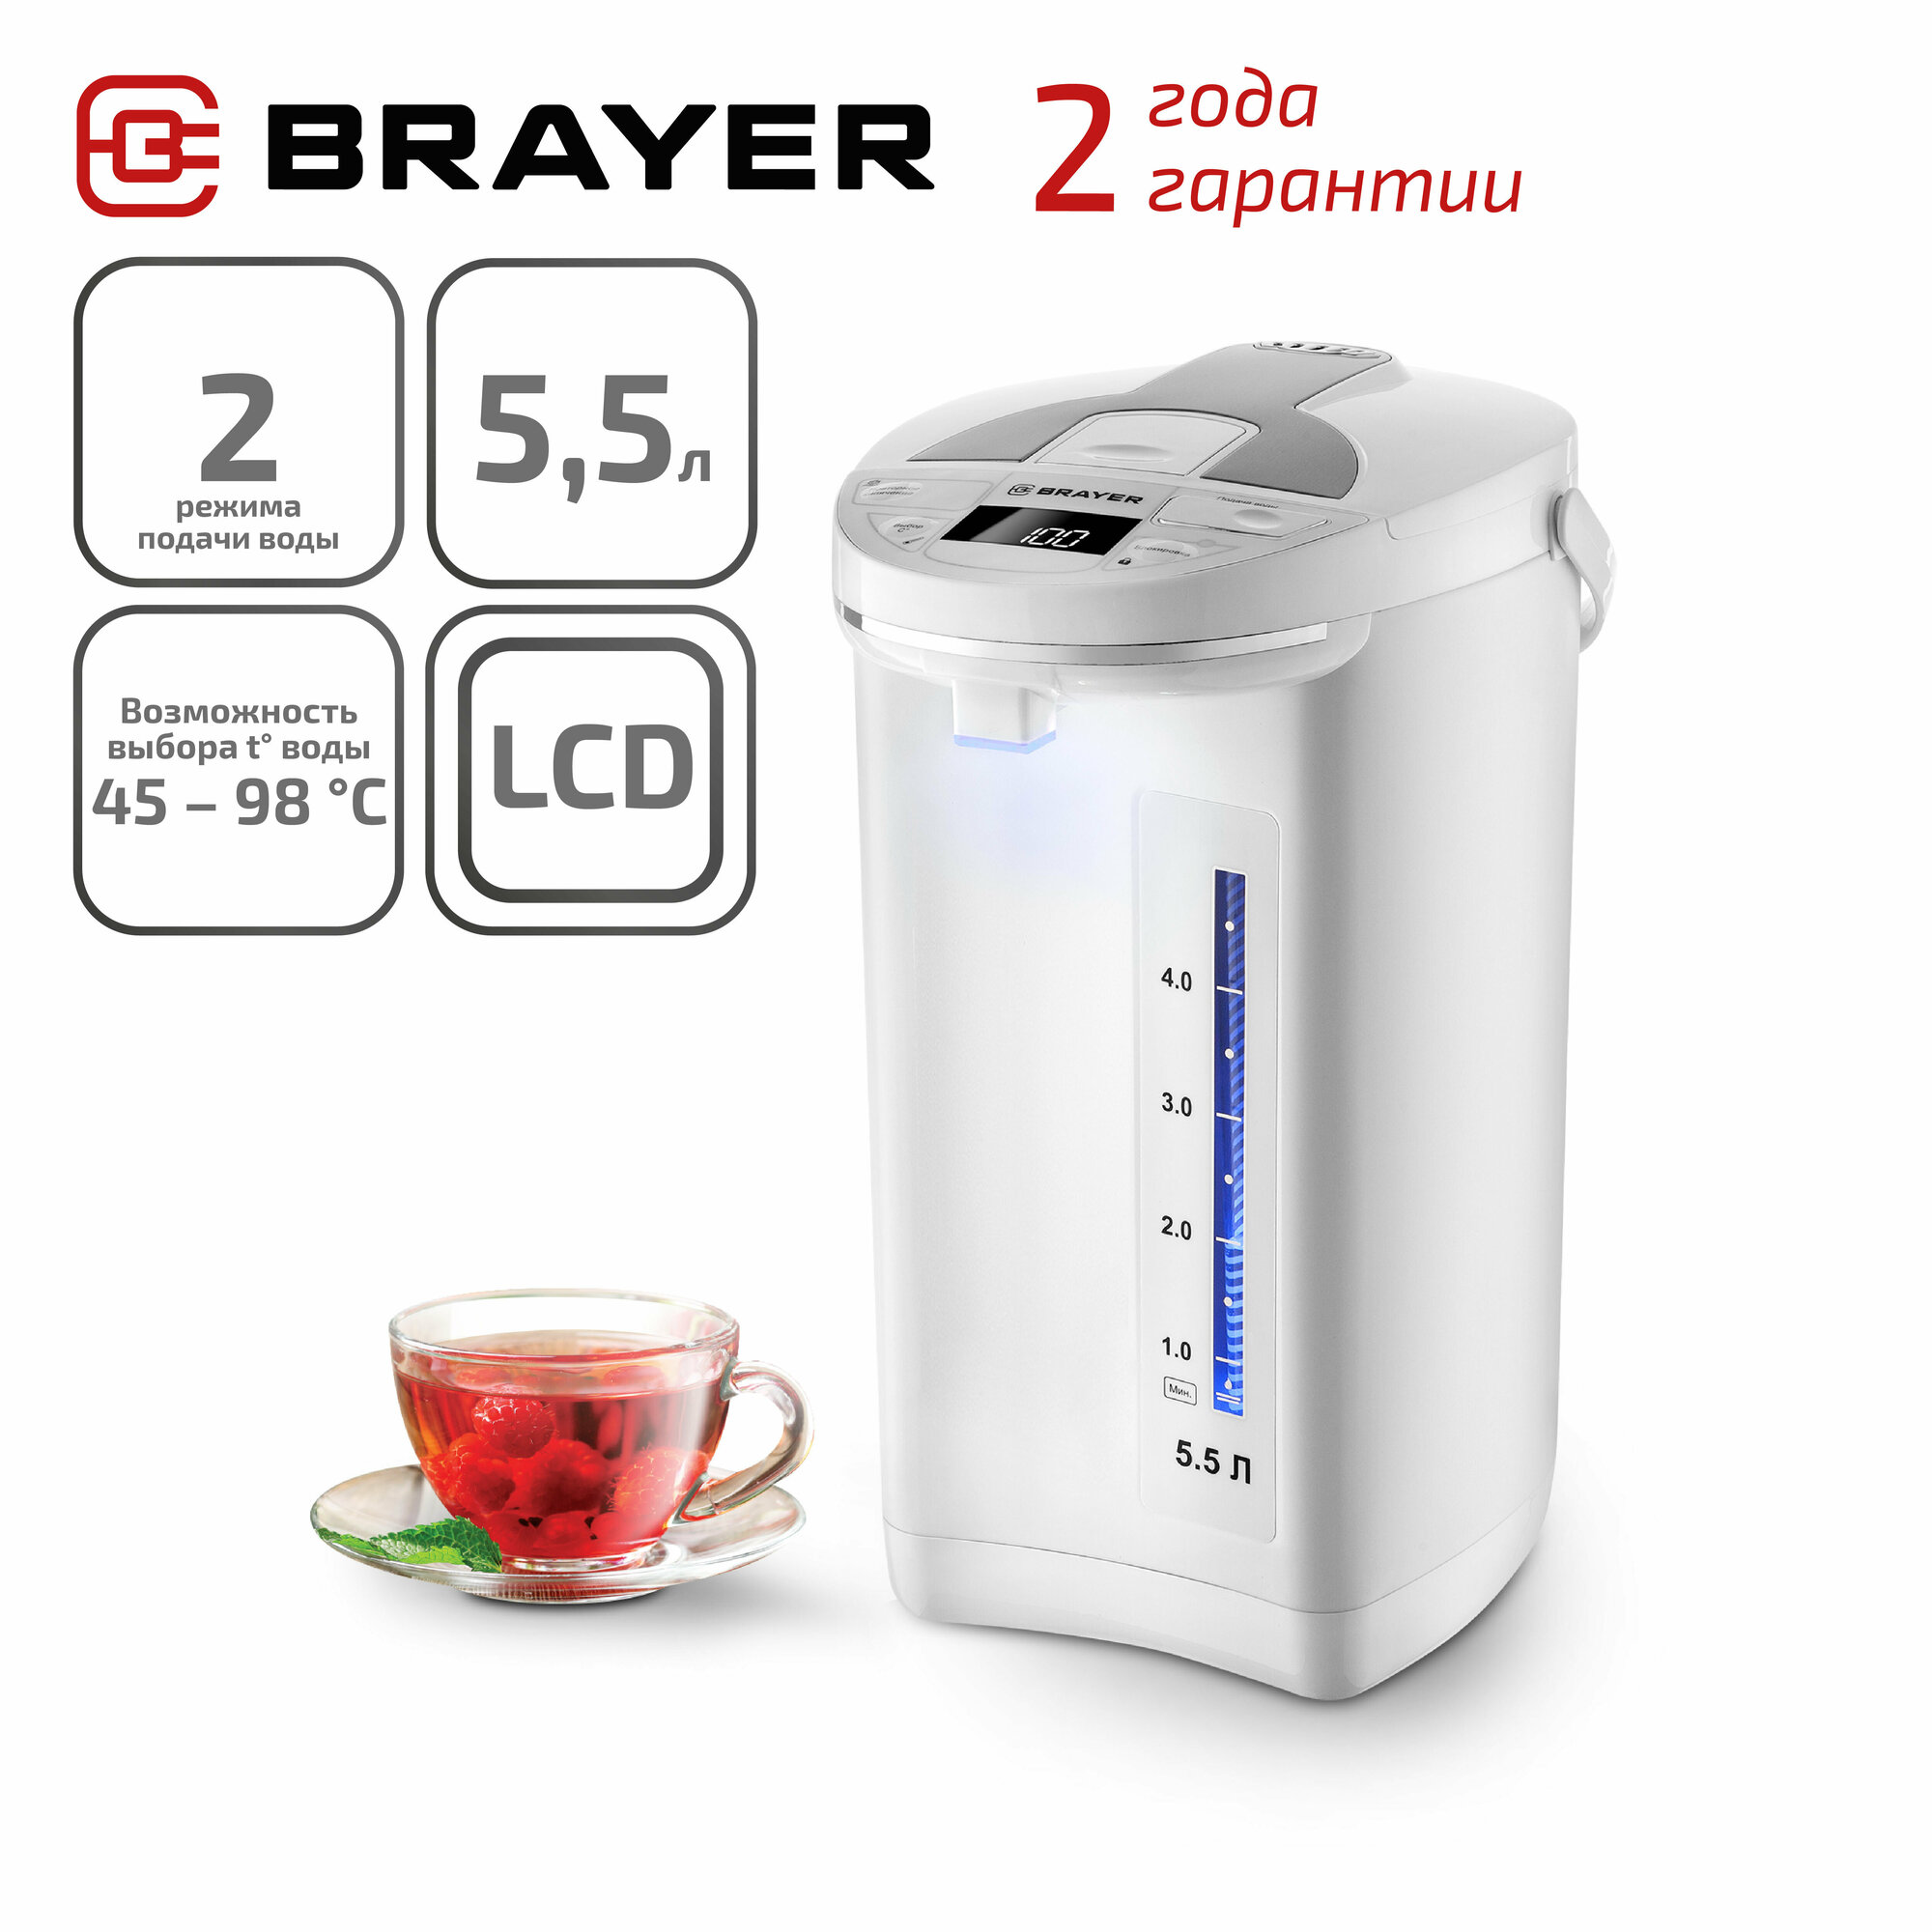 Термопот Brayer BR1091WH, 1450 Вт, 5,5 л, 2 способа подачи воды, LCD-дисплей, поддержание температуры, блокировка